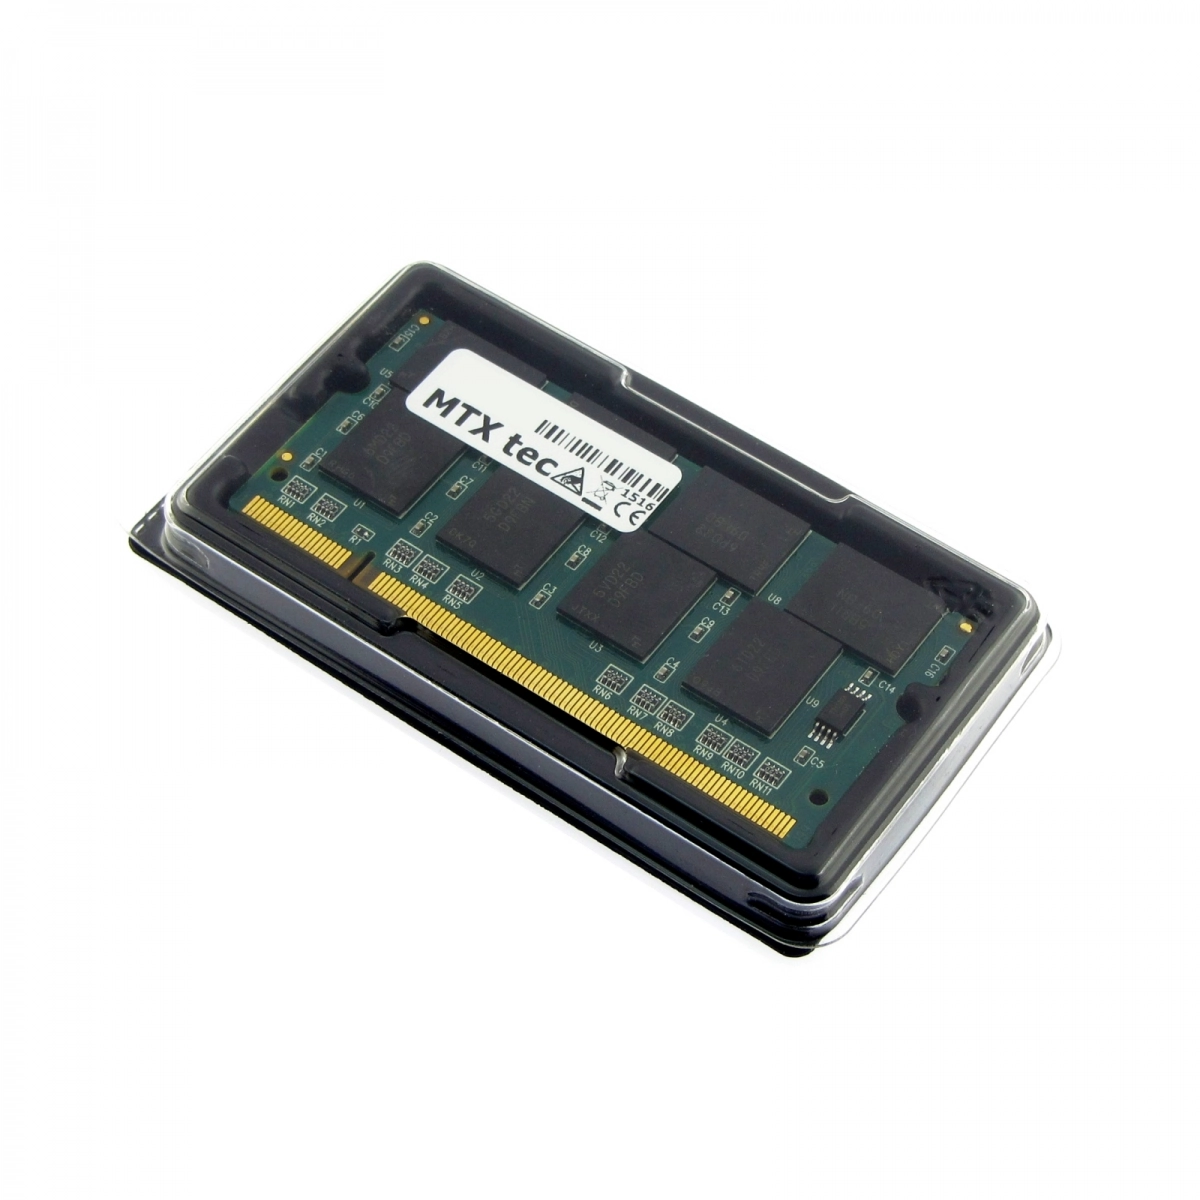 MTXtec Arbeitsspeicher 1 GB RAM für DELL Inspiron 1200